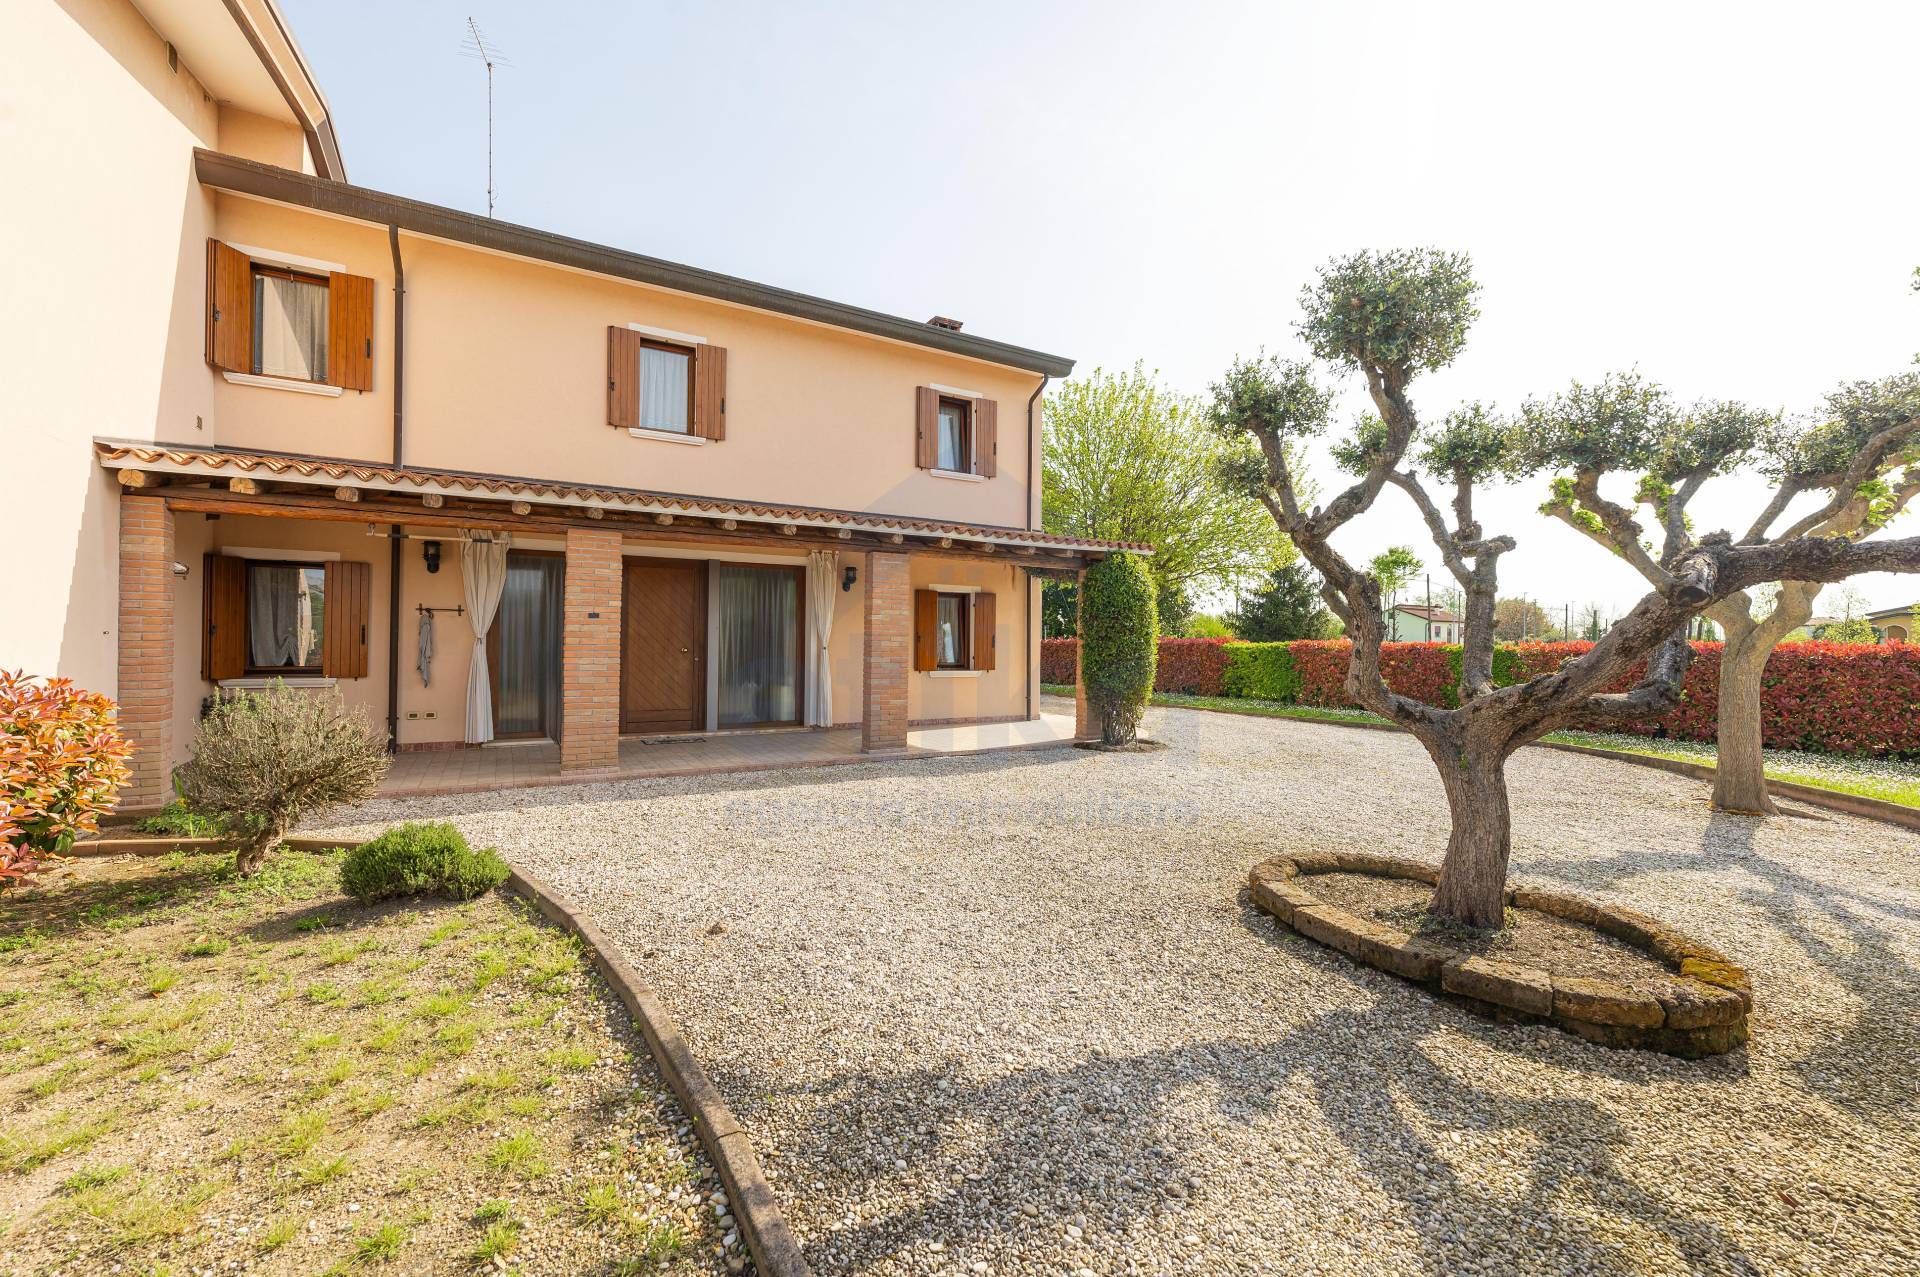 Villa Bifamiliare in vendita a Noventa di Piave, 5 locali, prezzo € 200.000 | PortaleAgenzieImmobiliari.it